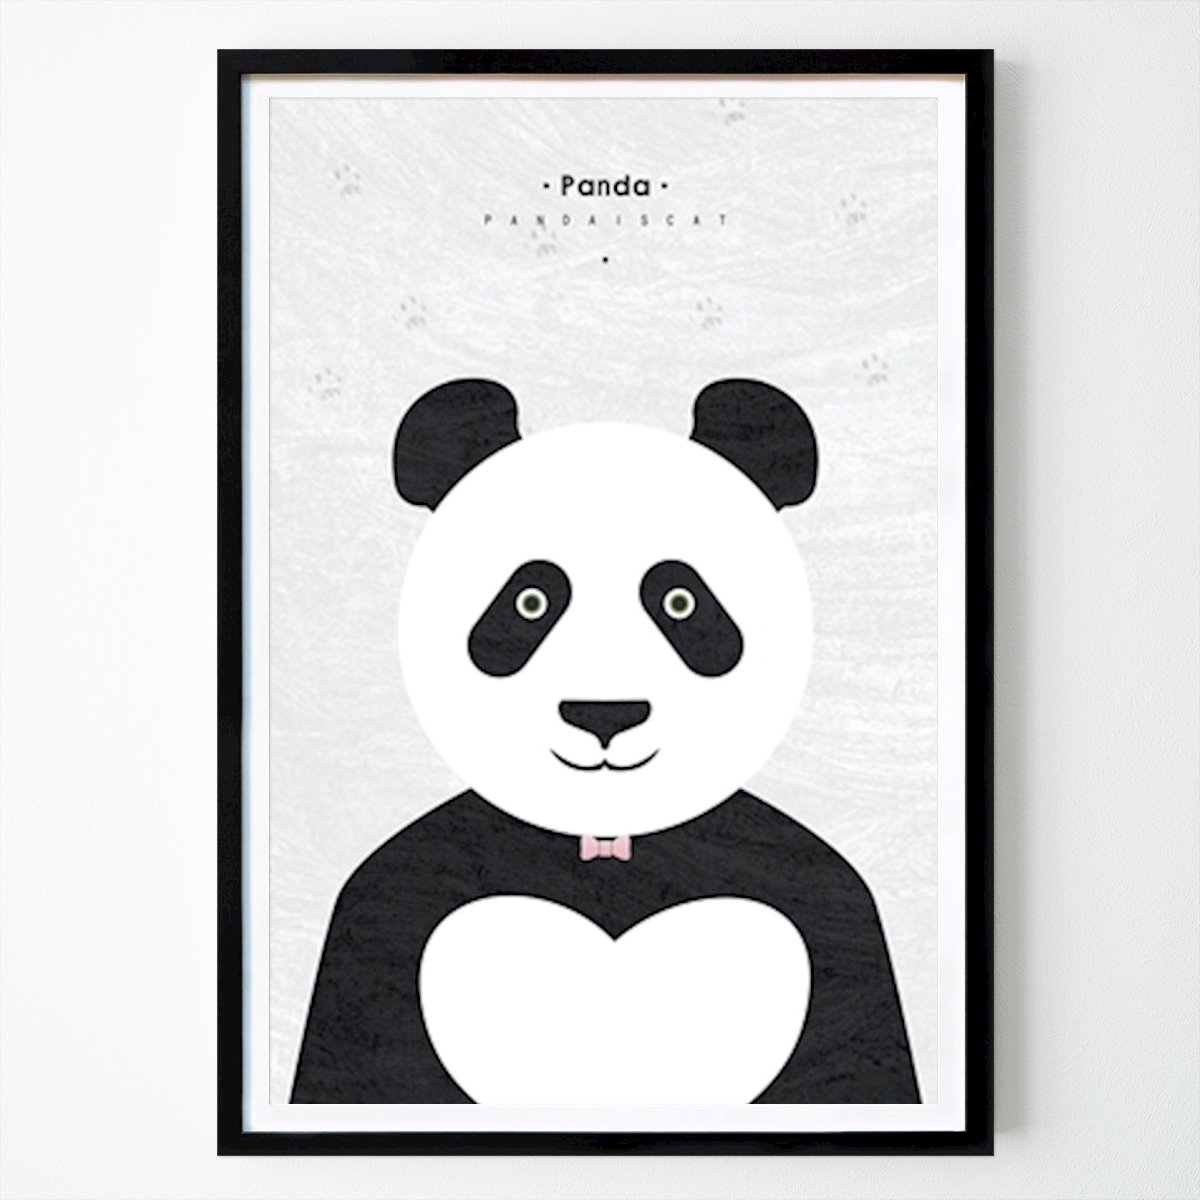 Poster: Panda-Illustration von James CD von Printler